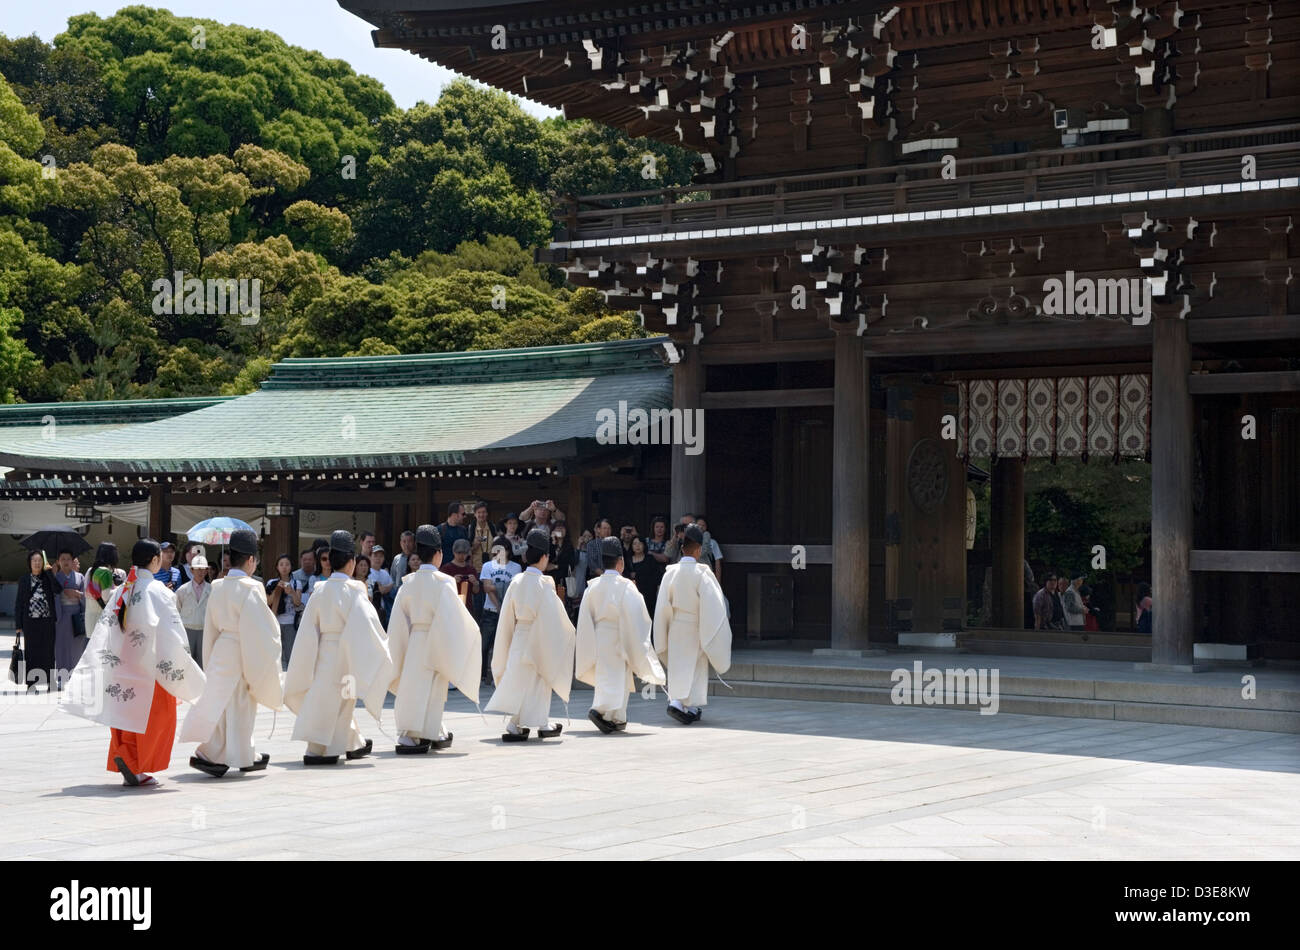 Les prêtres Shinto et une jeune fille miko dans une robe rouge en procession dans la porte principale de Meiji Jingu durant une cérémonie religieuse Banque D'Images